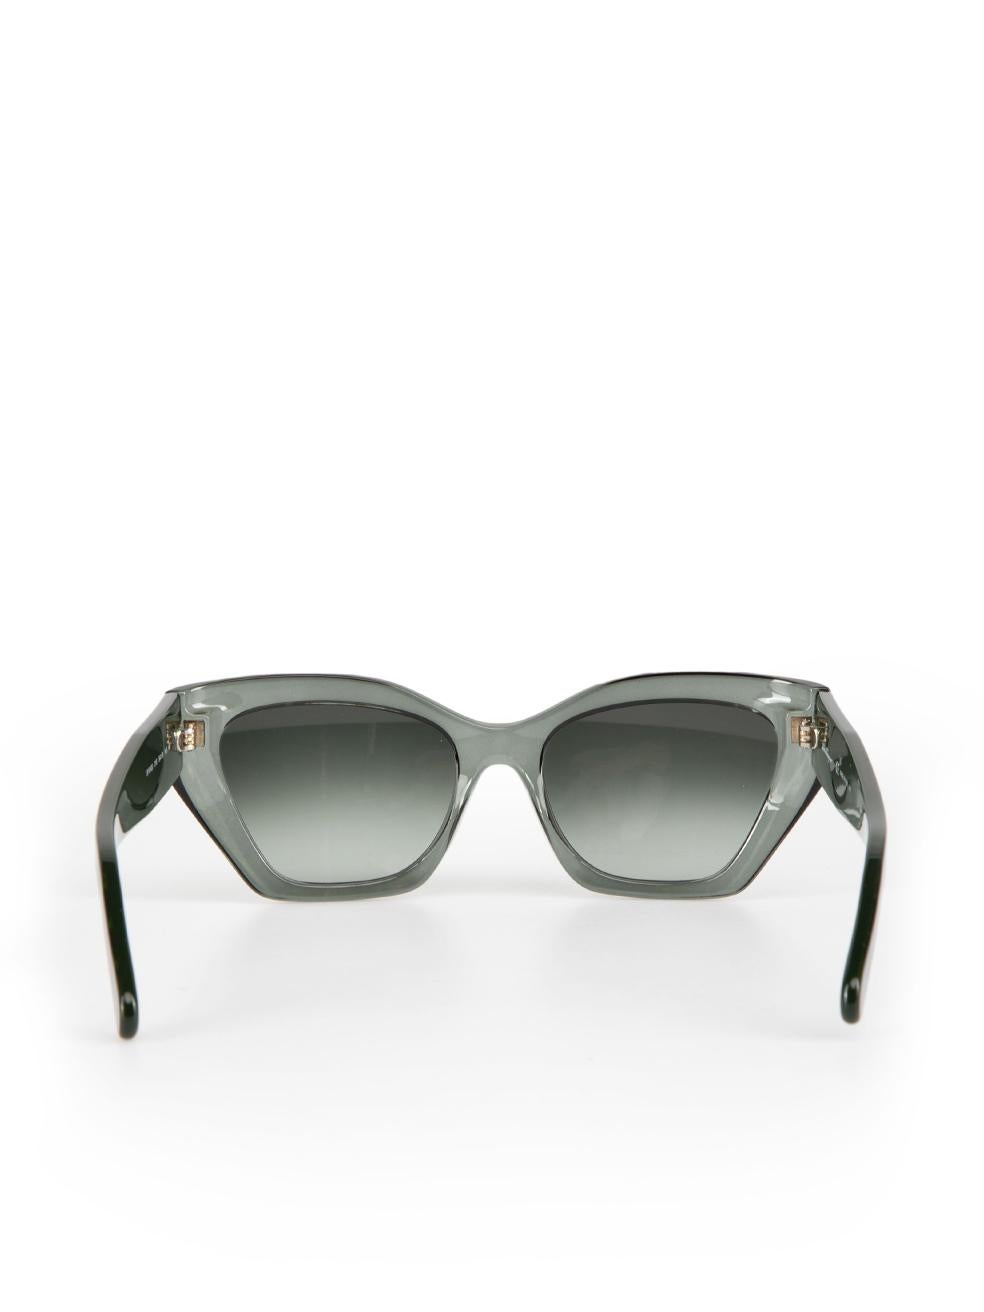 Salvatore Ferragamo Transparent Forest Green Gradient Square Sunglasses In New Condition For Sale In London, GB